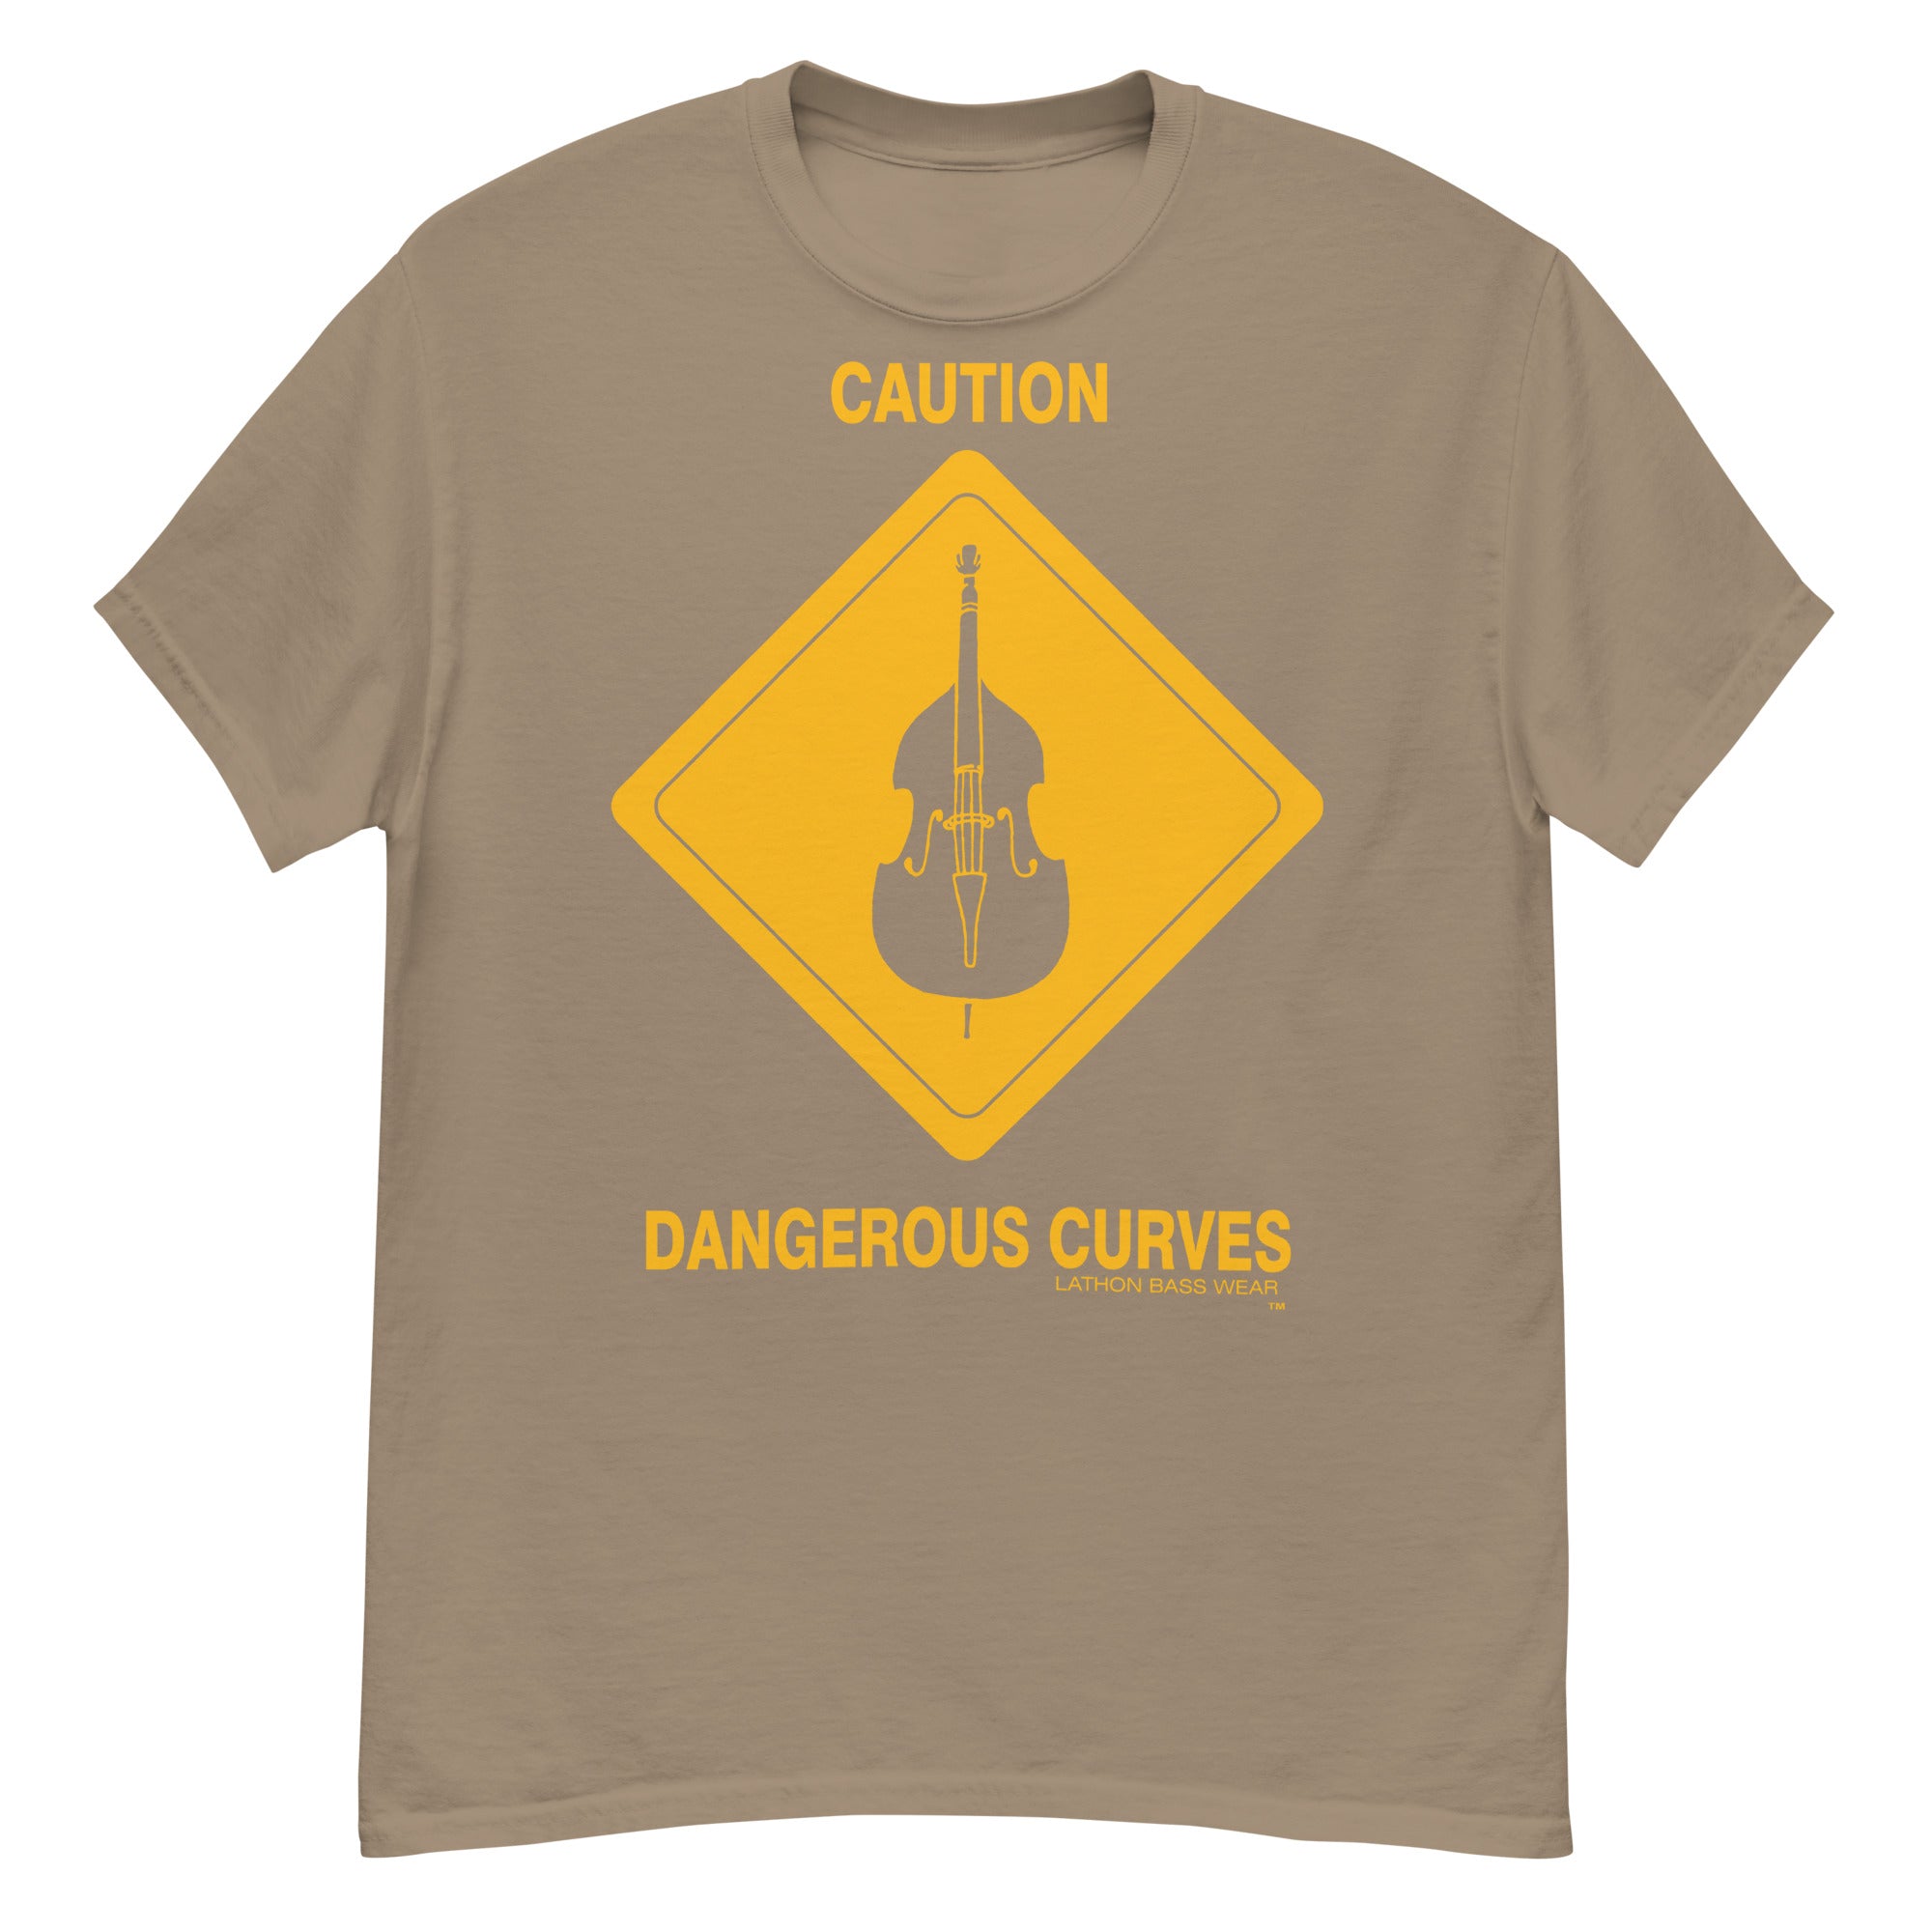 CAUTION Short-Sleeve T-Shirt